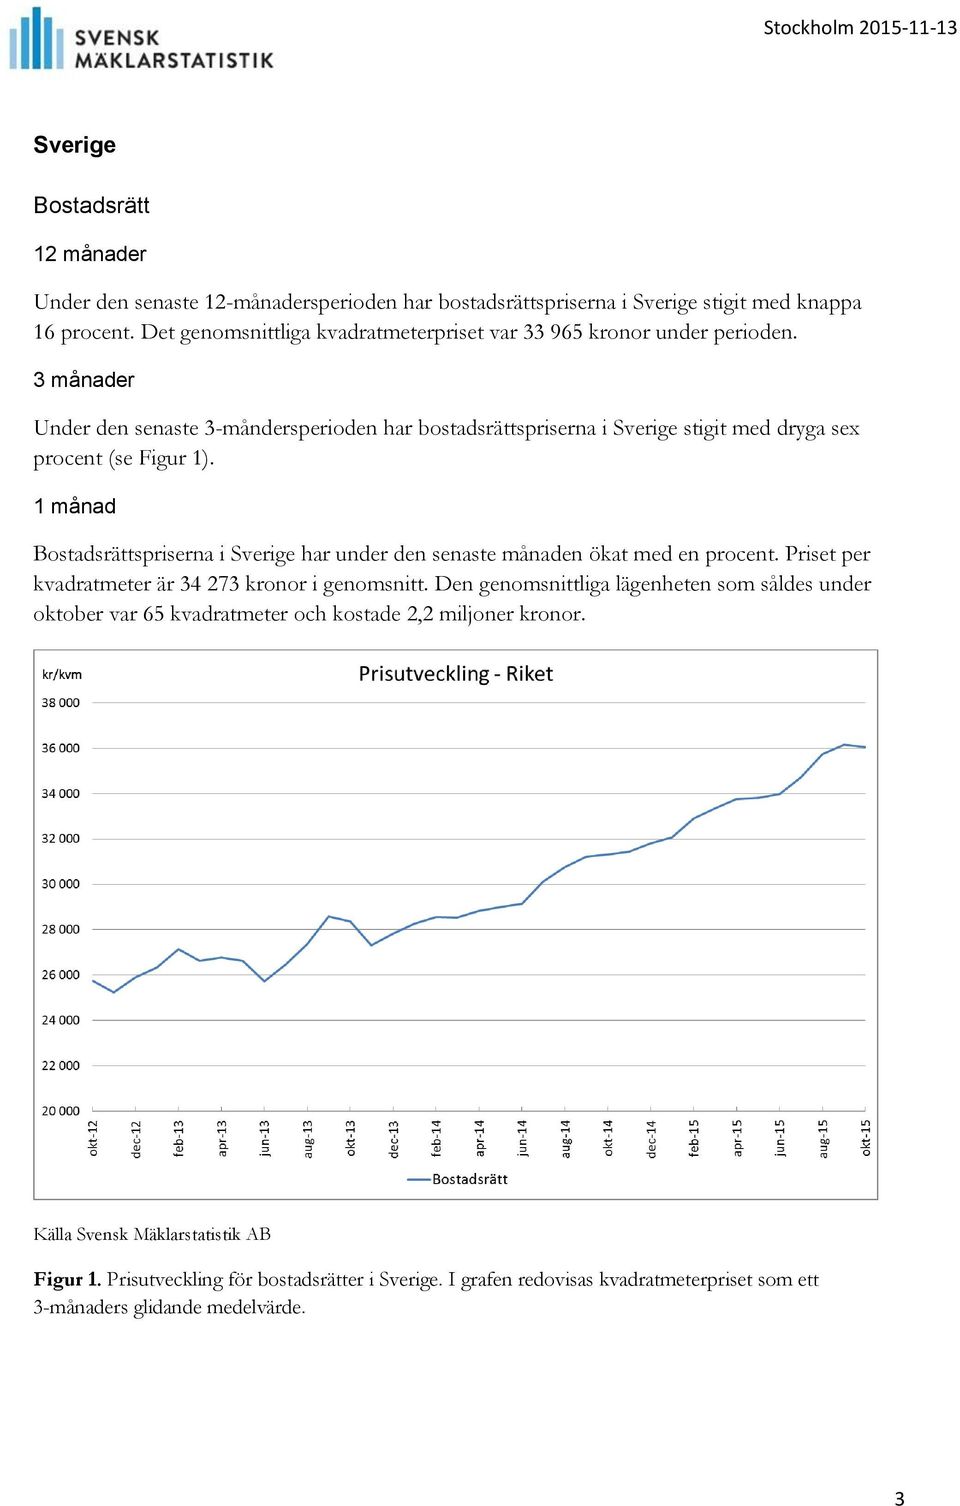 Under den senaste 3-måndersperioden har bostadsrättspriserna i Sverige stigit med dryga sex procent (se Figur 1).